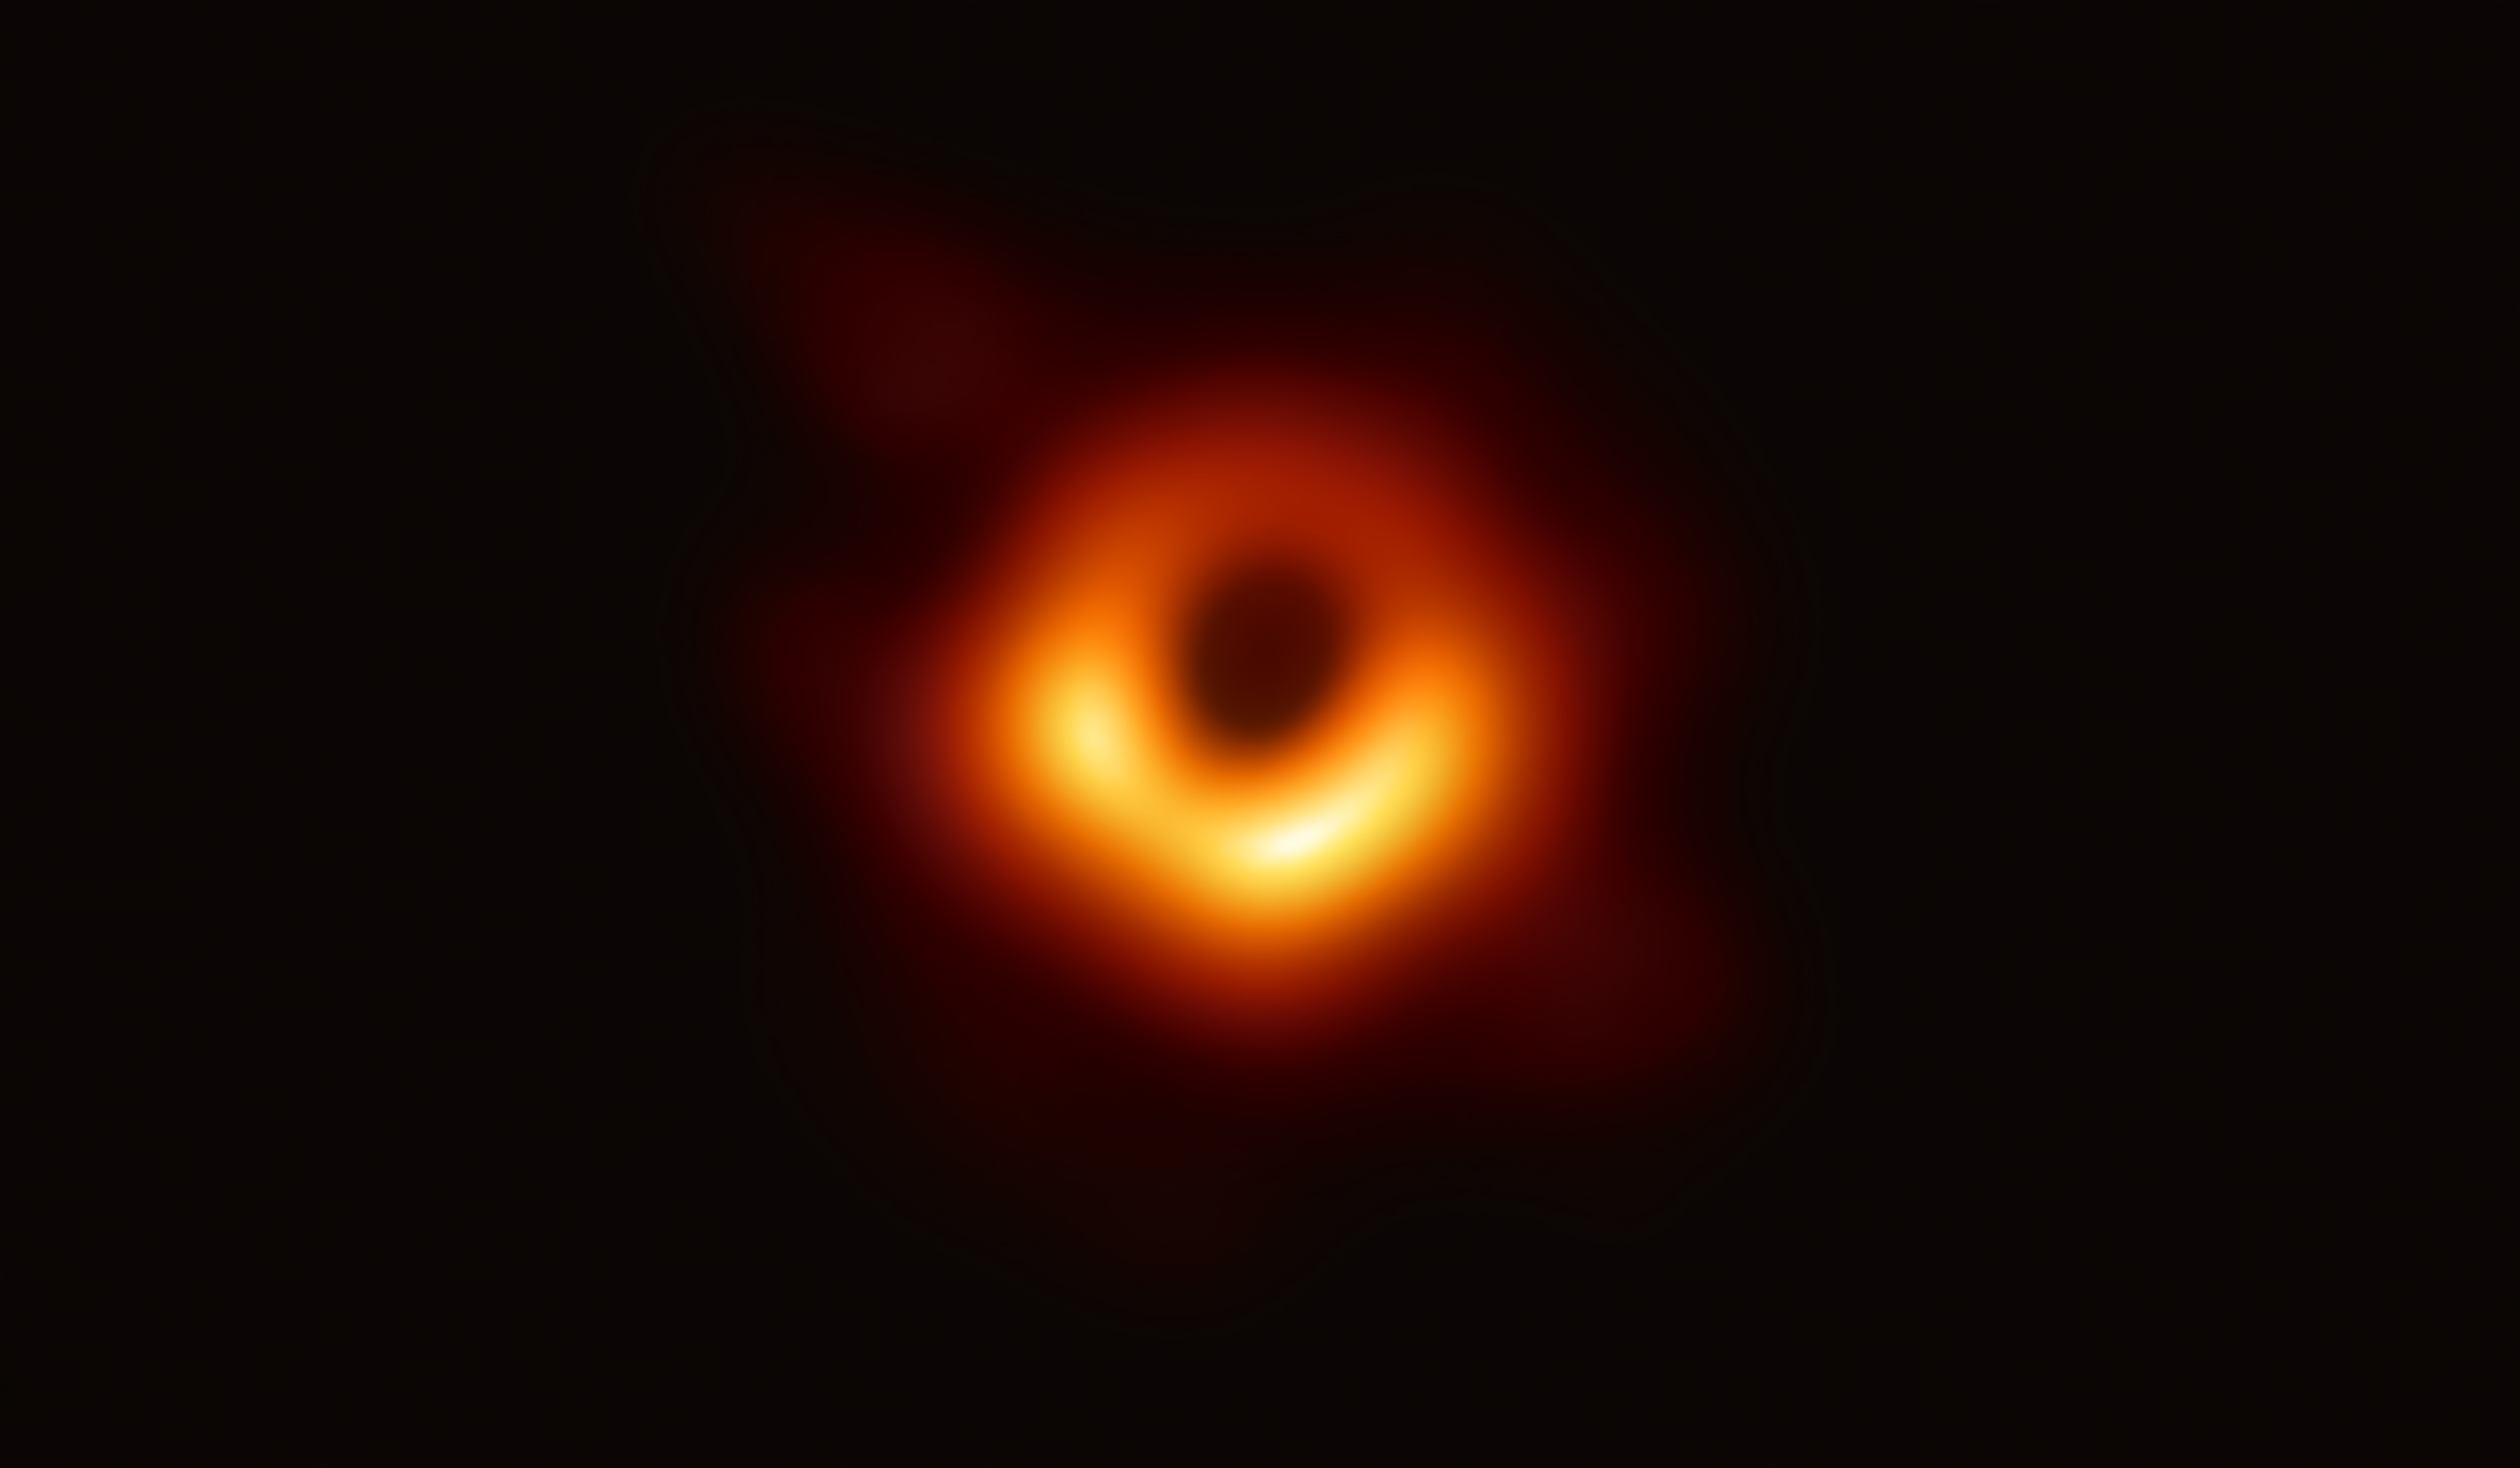 Le trou noir Sagittarius A*, photographié en 2019